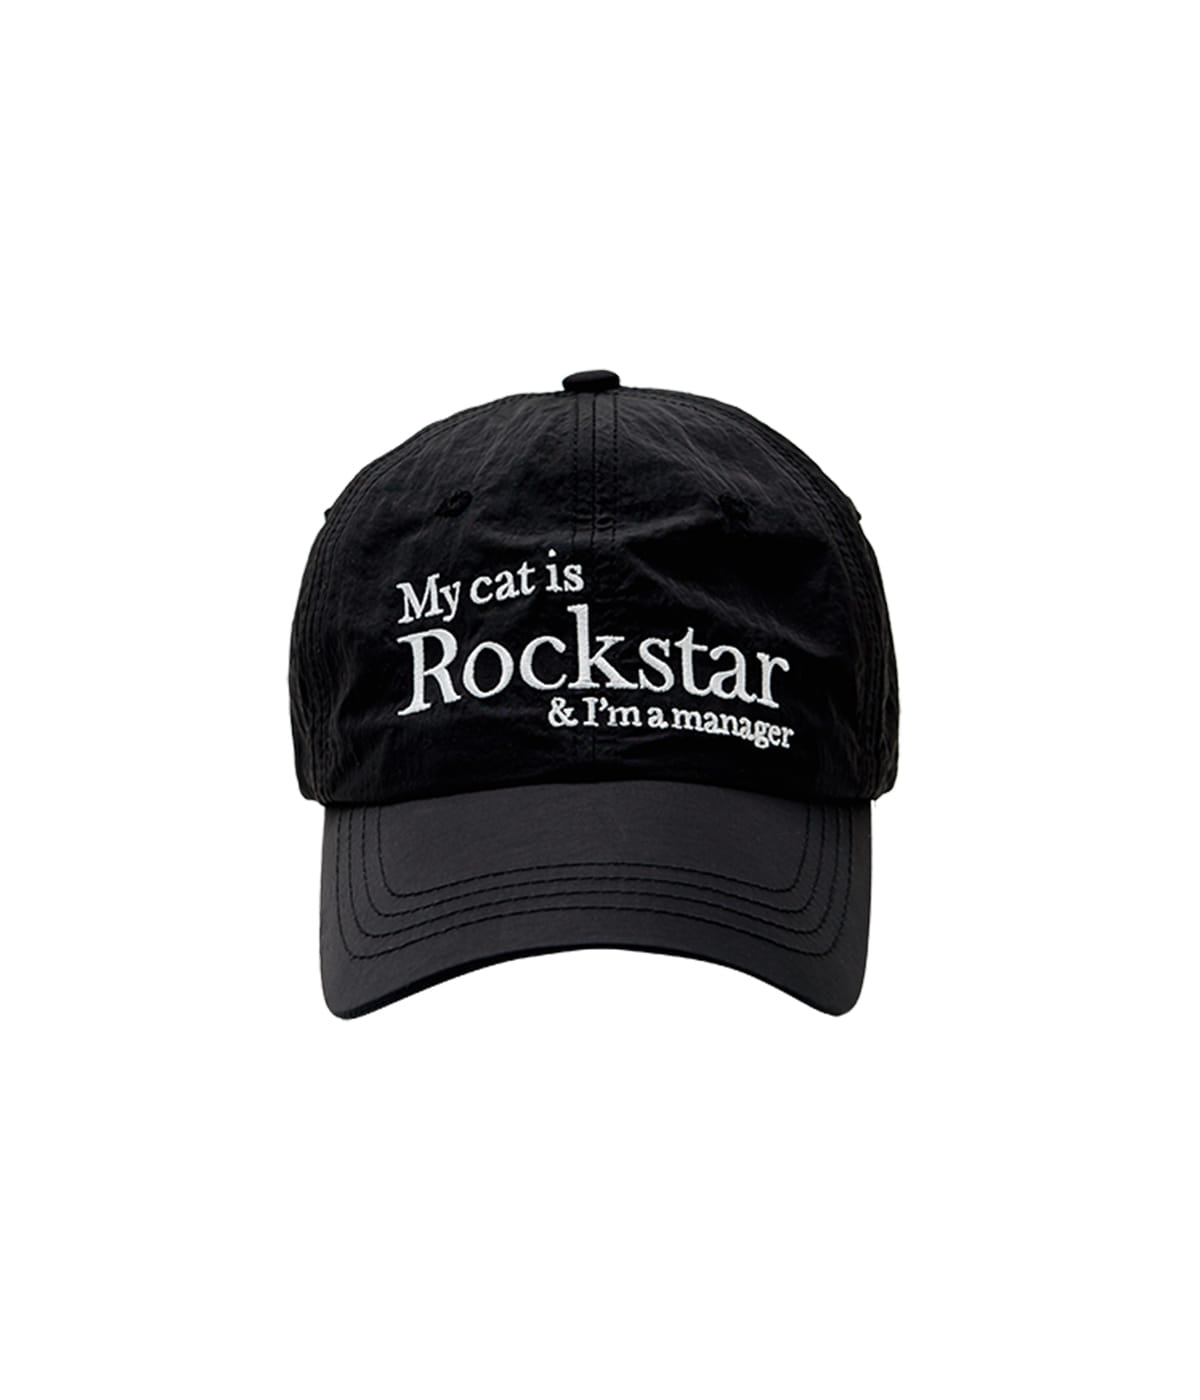 Rockstar cat cap (Black)